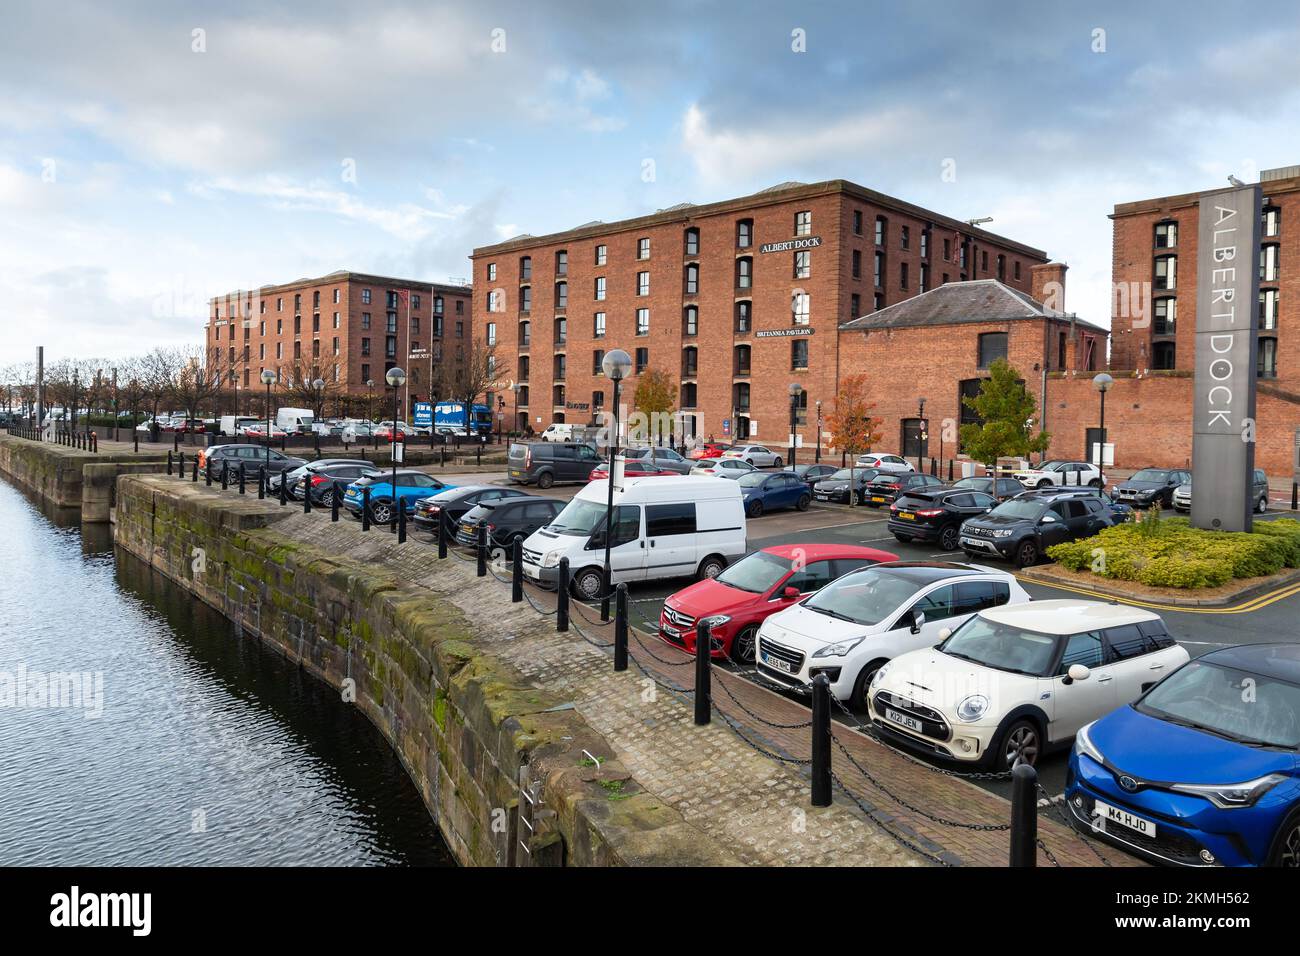 Liverpool, Royaume-Uni : parking Gower Street, parking du centre-ville entre Albert Dock et Dukes Dock. Banque D'Images